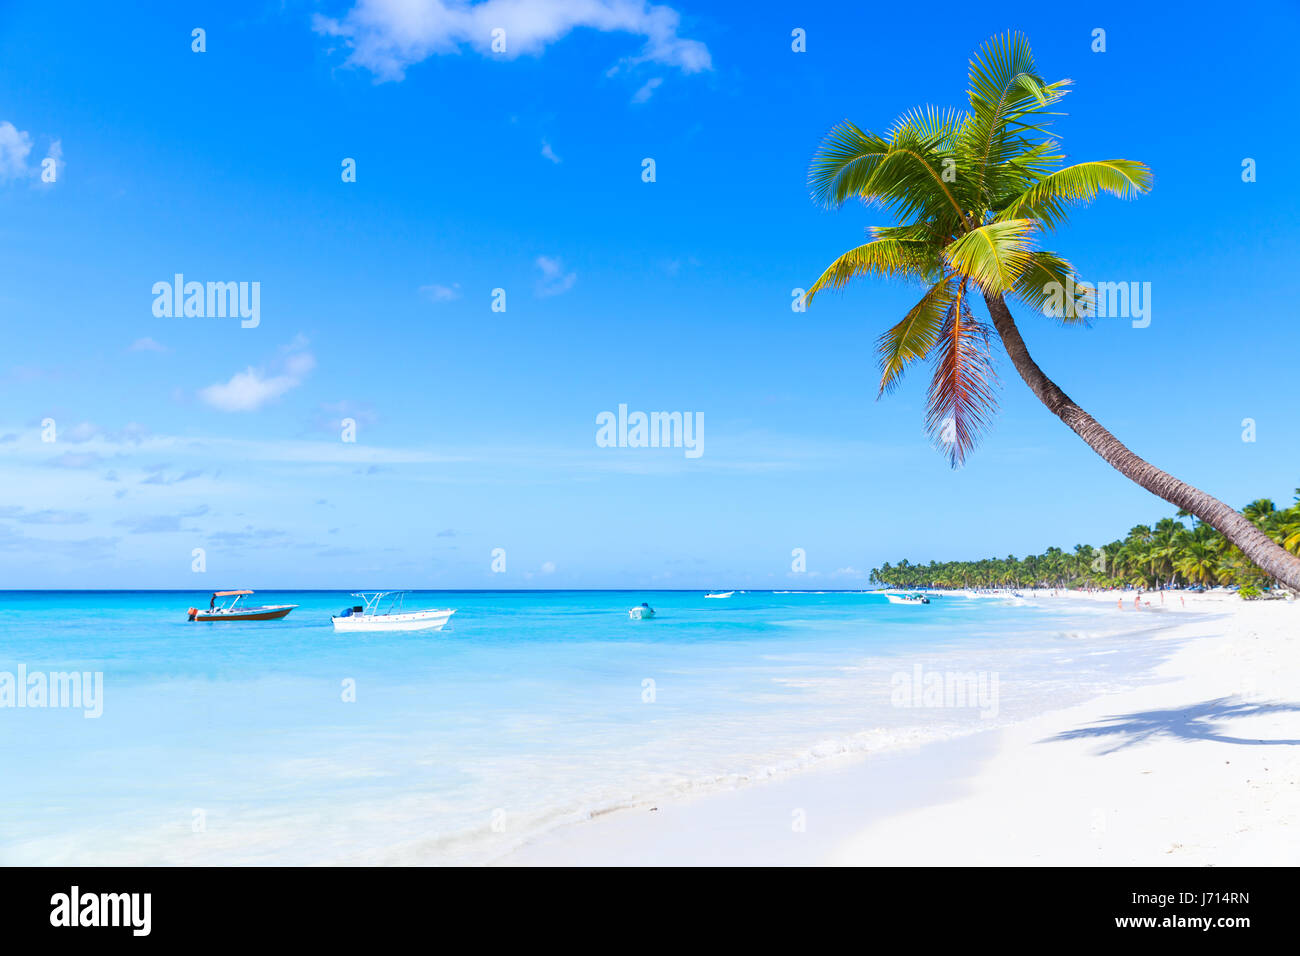 El cocotero crece sobre la playa de arena blanca de la isla Saona. Costa del Mar Caribe, República Dominicana Foto de stock